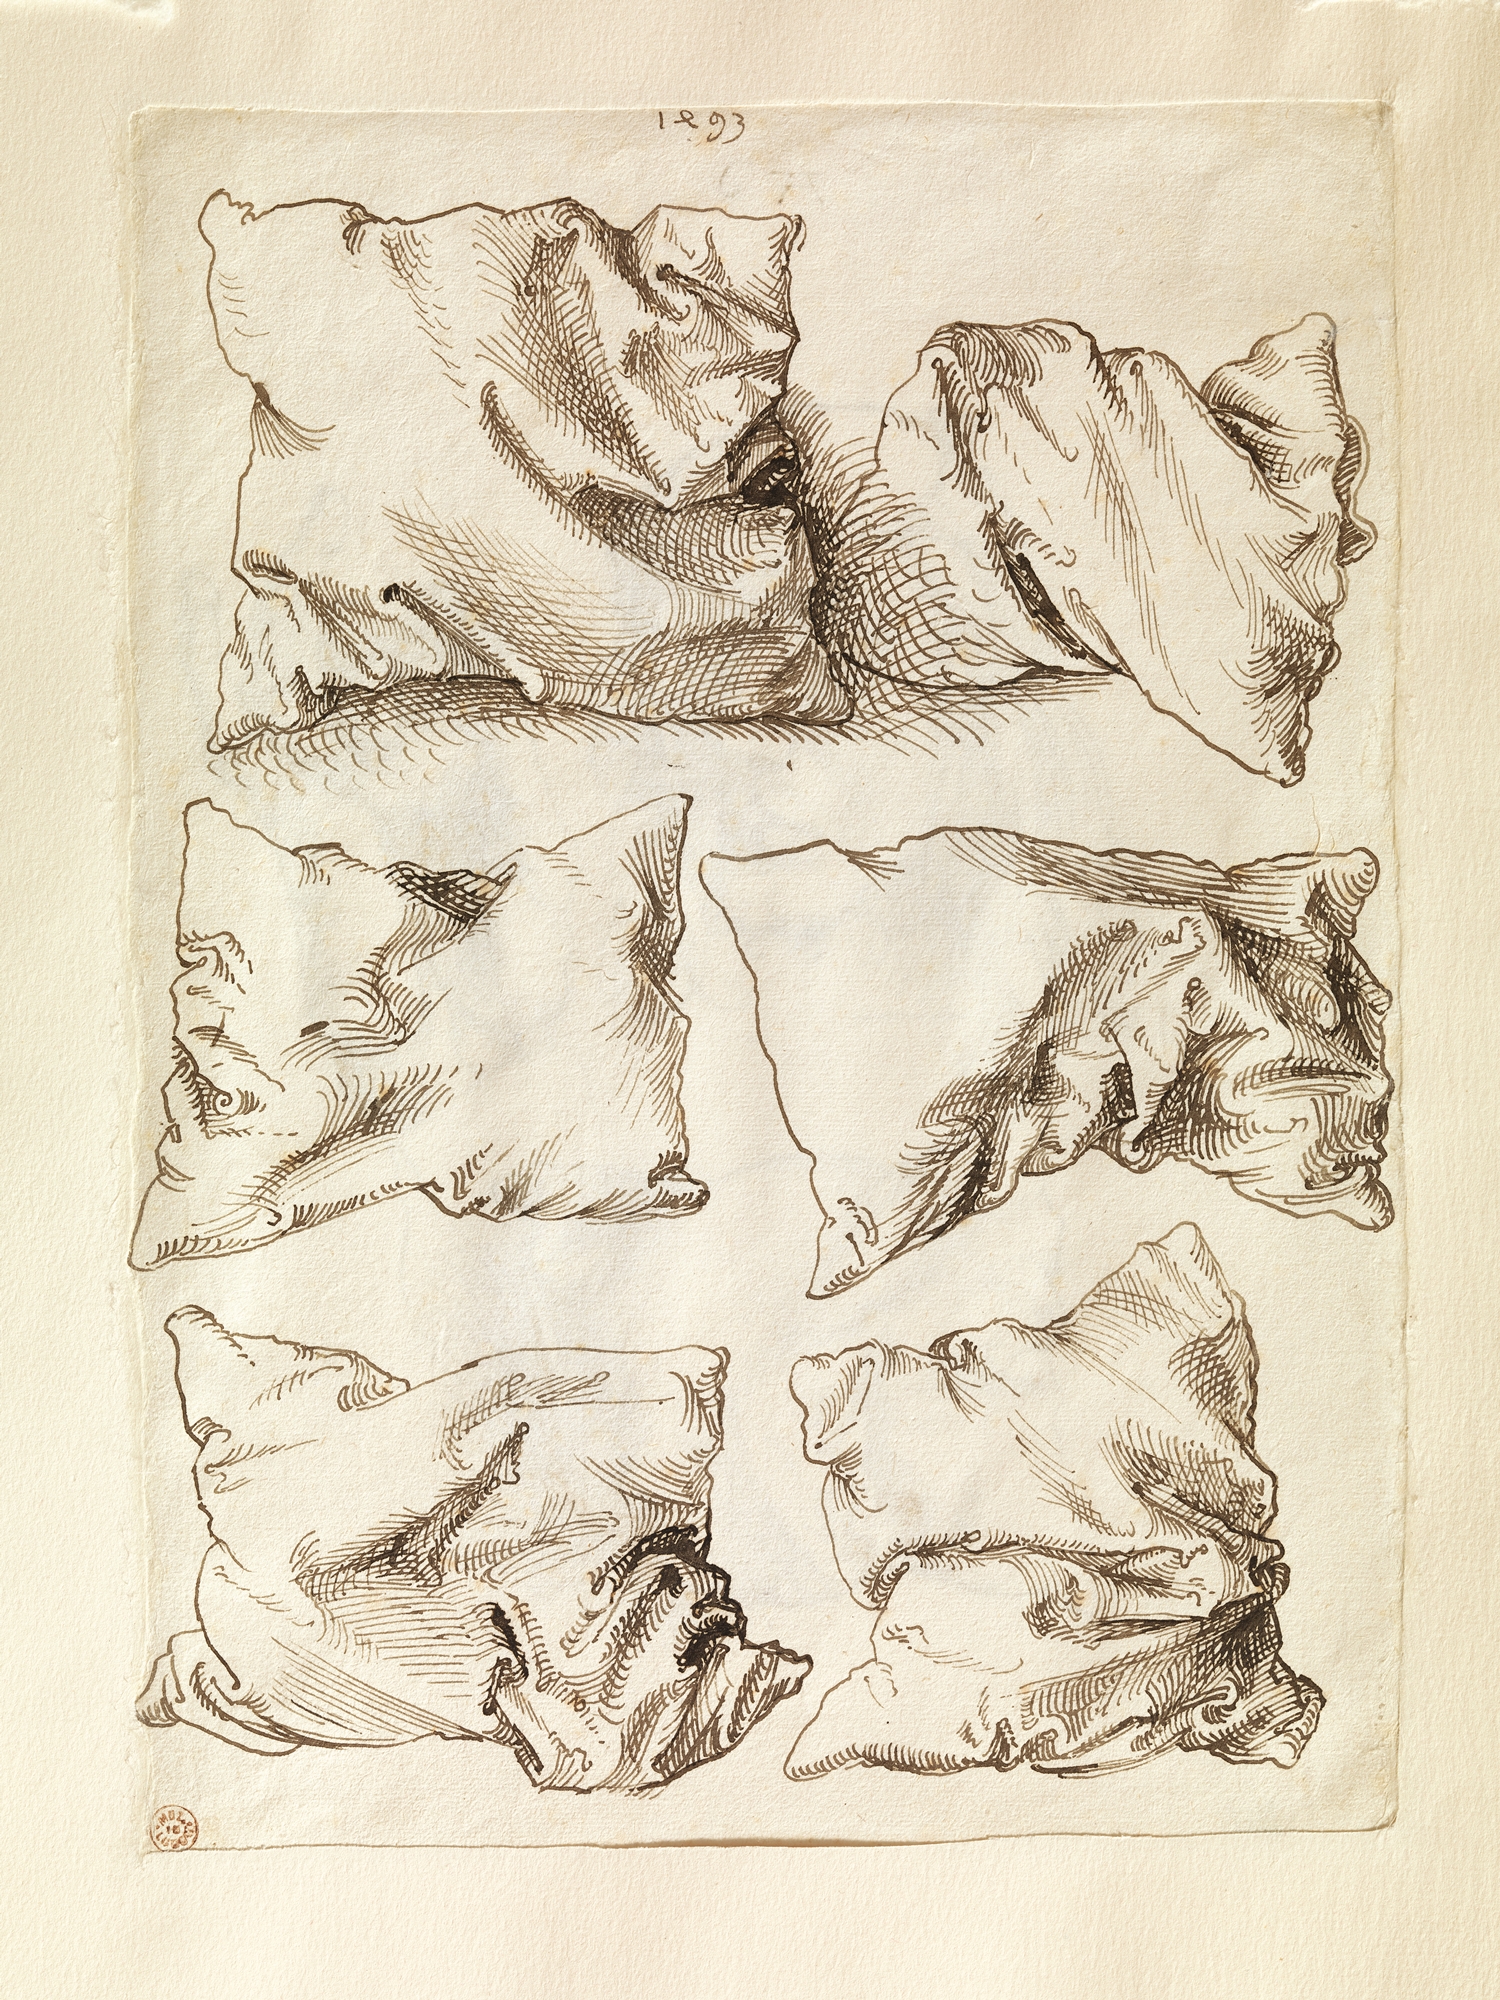 Seis estudios de almohadas by Albrecht Dürer - 1493 - 27.8 x 20.2 cm Museo Metropolitano de Arte